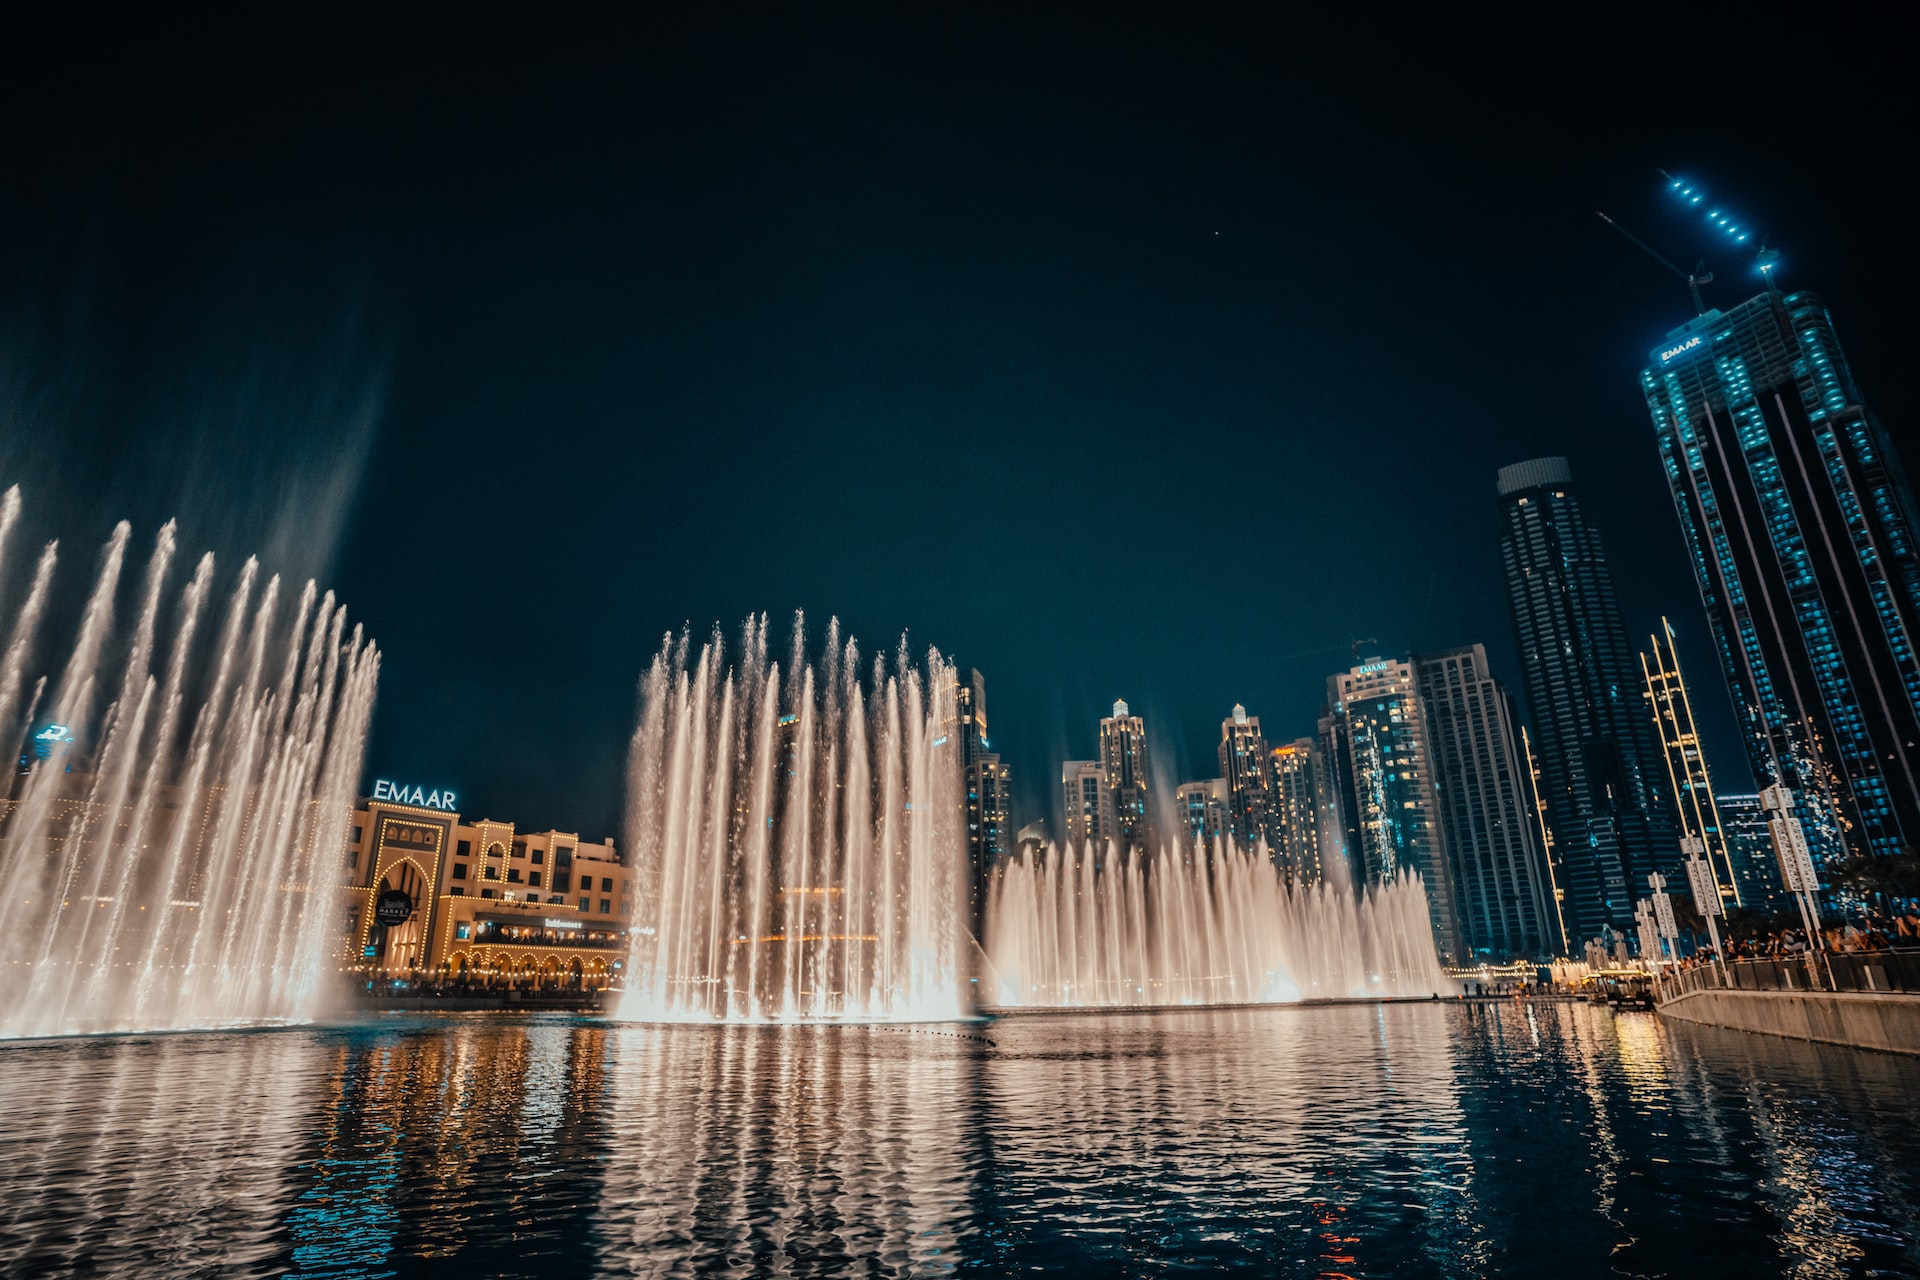 Dubai Fountain szökőkút-show